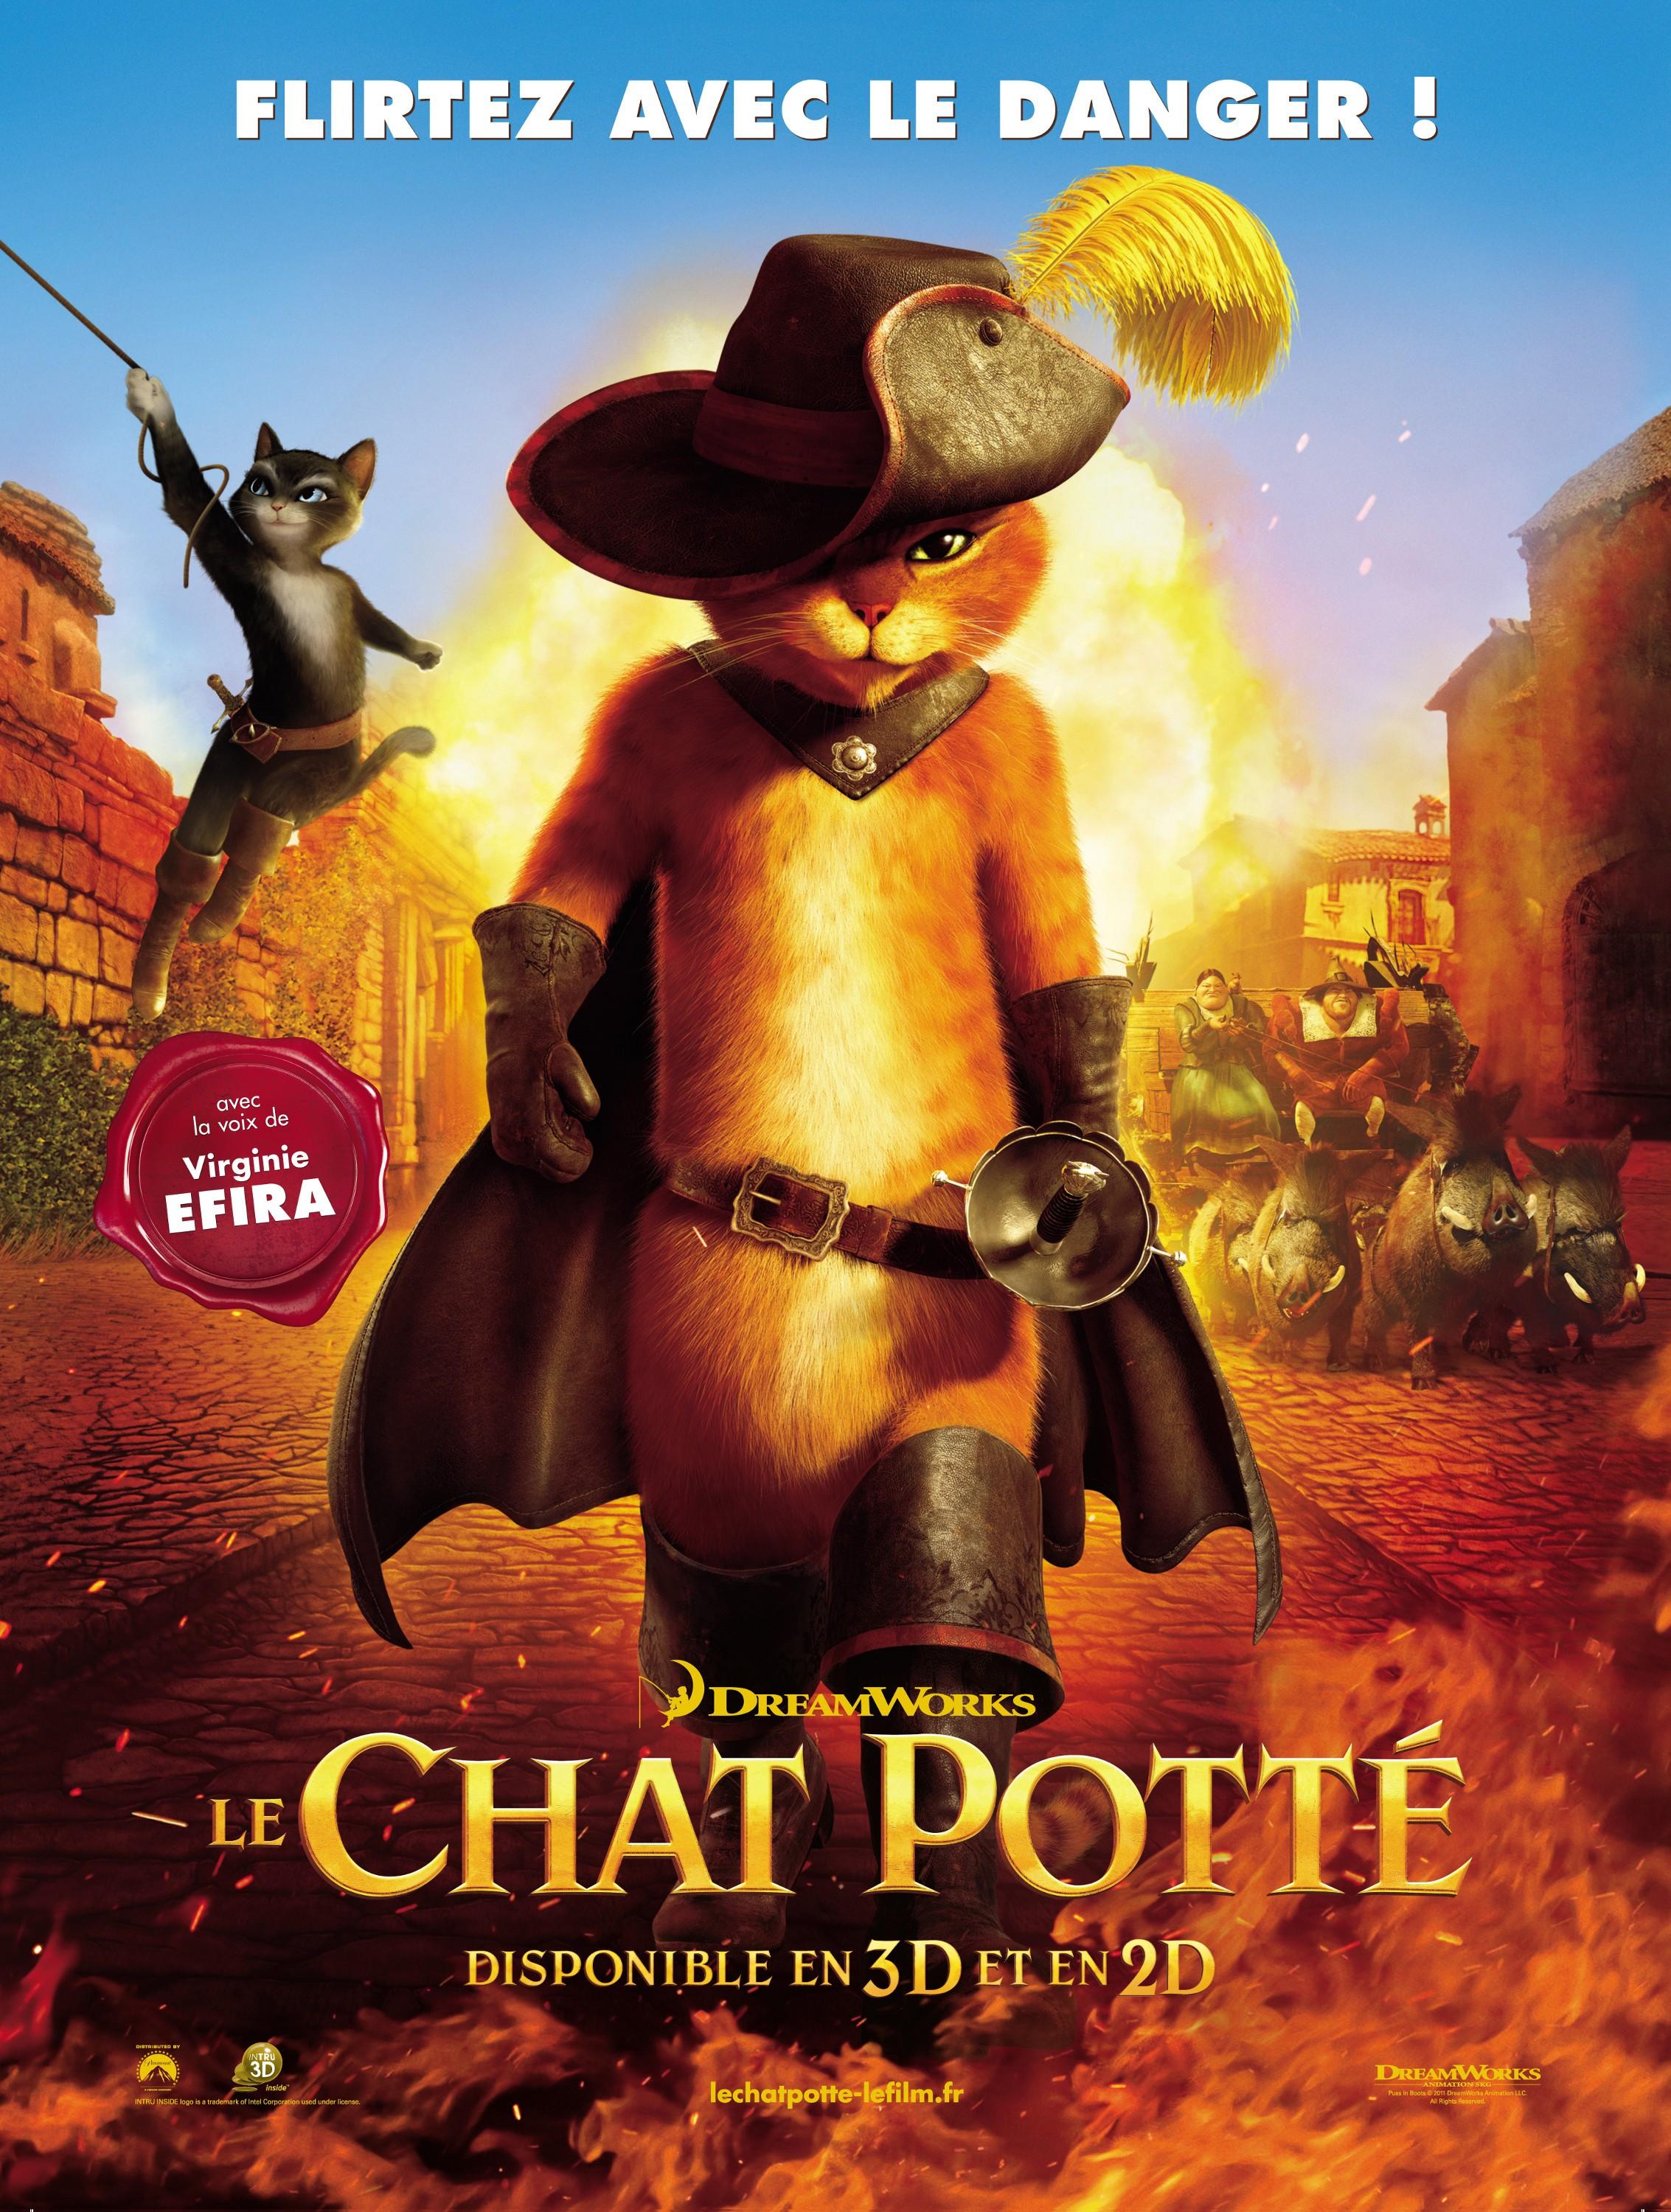 Постер фильма Кот в сапогах | Puss in Boots